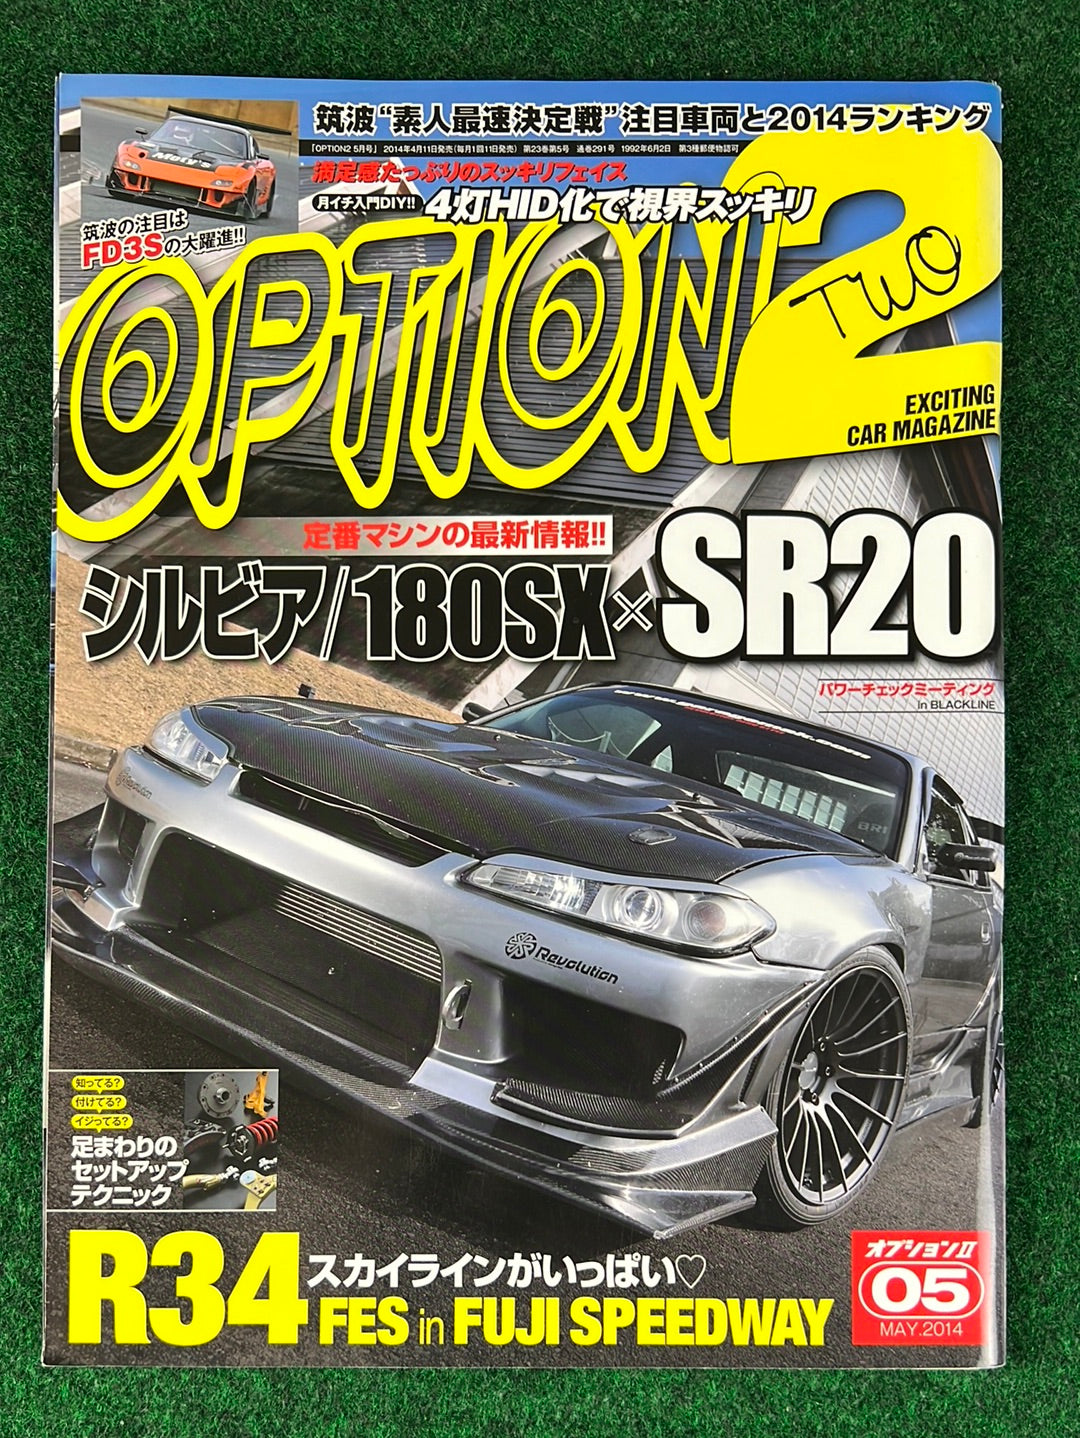 Option2 Magazine - May 2014